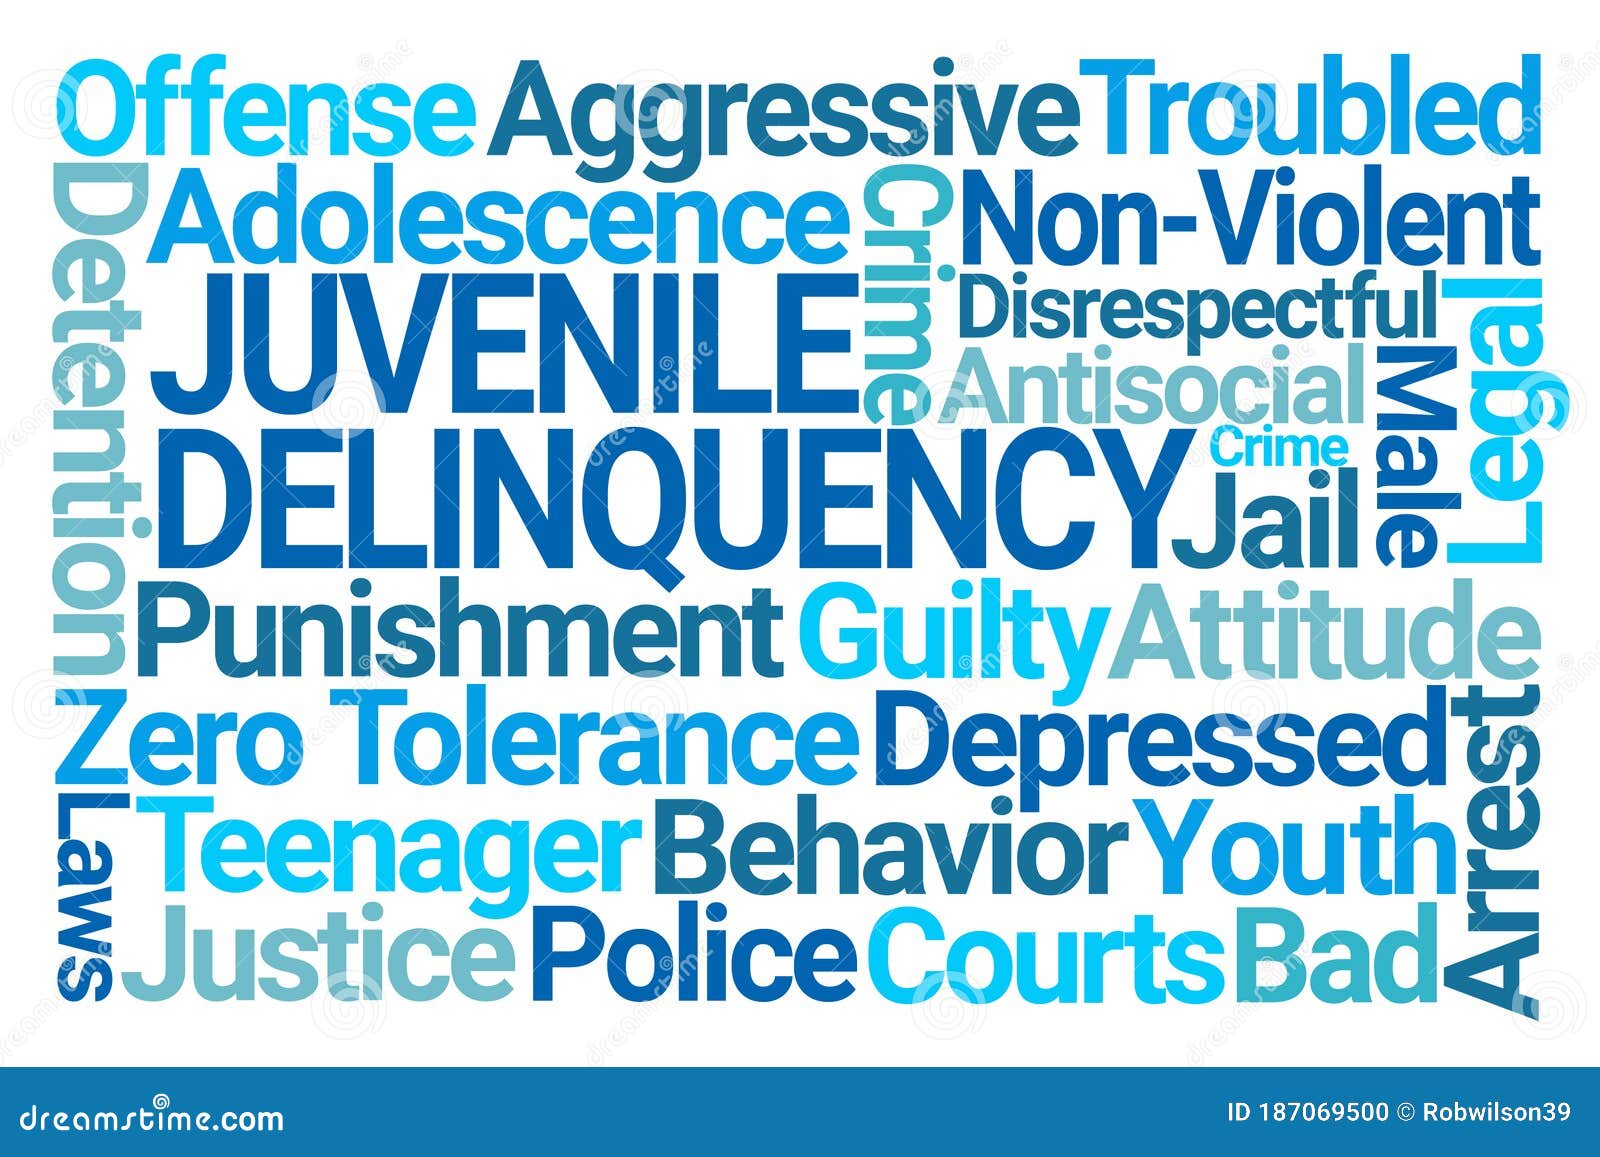 juvenile delinquency word cloud